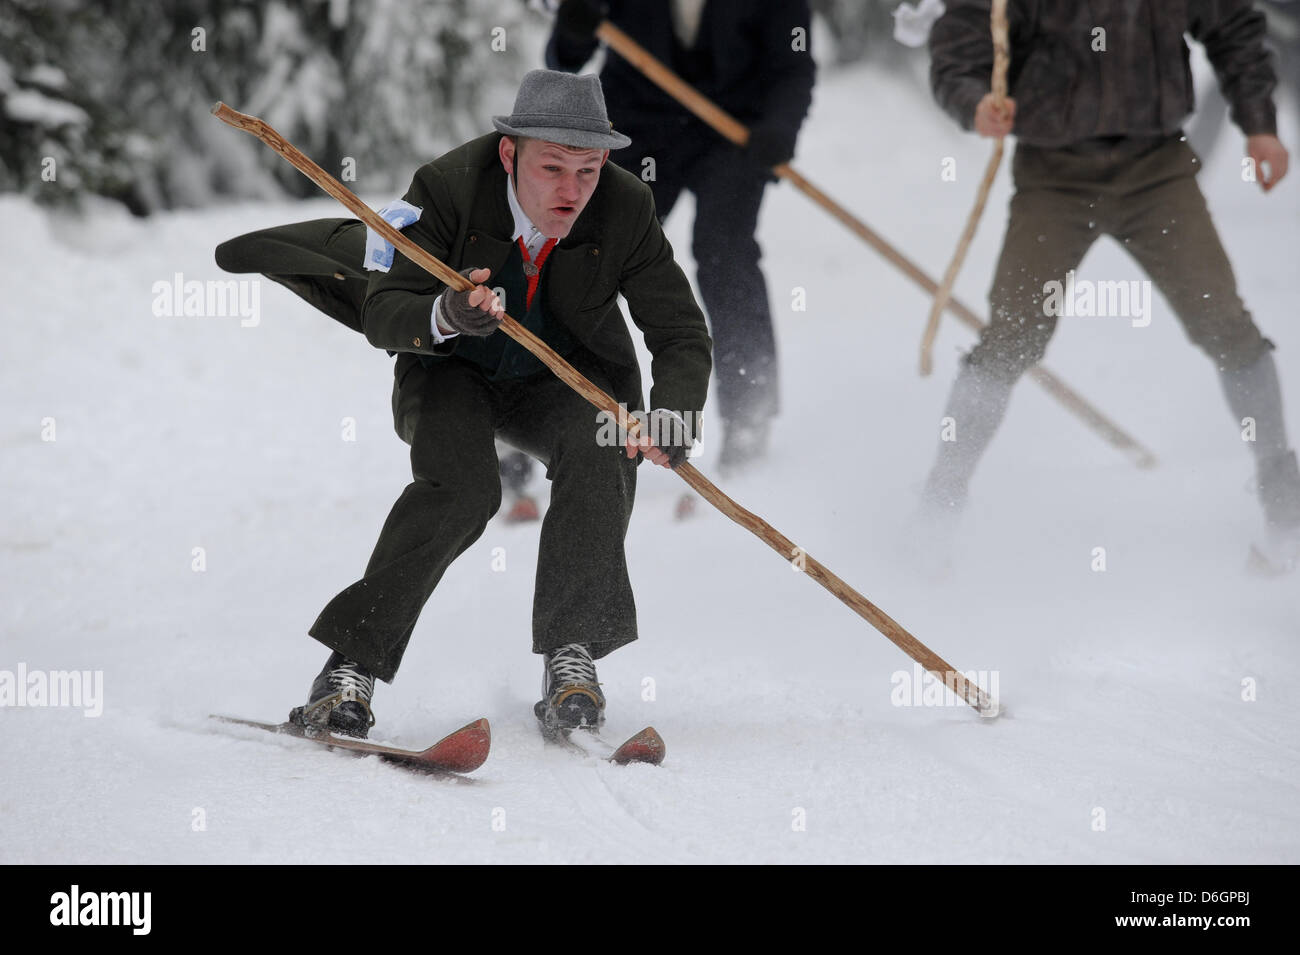 Ein Skifahrer in einem historischen Kostüm in einem Rennen auf einer Piste in St. Englmar, Deutschland, 21. Februar 2012. Menschen sind Teilnahme an nostalgischen Skirennen auf historischen Skiern wie seit mehr als 100 Jahren. Foto: ARMIN WEIGEL Stockfoto